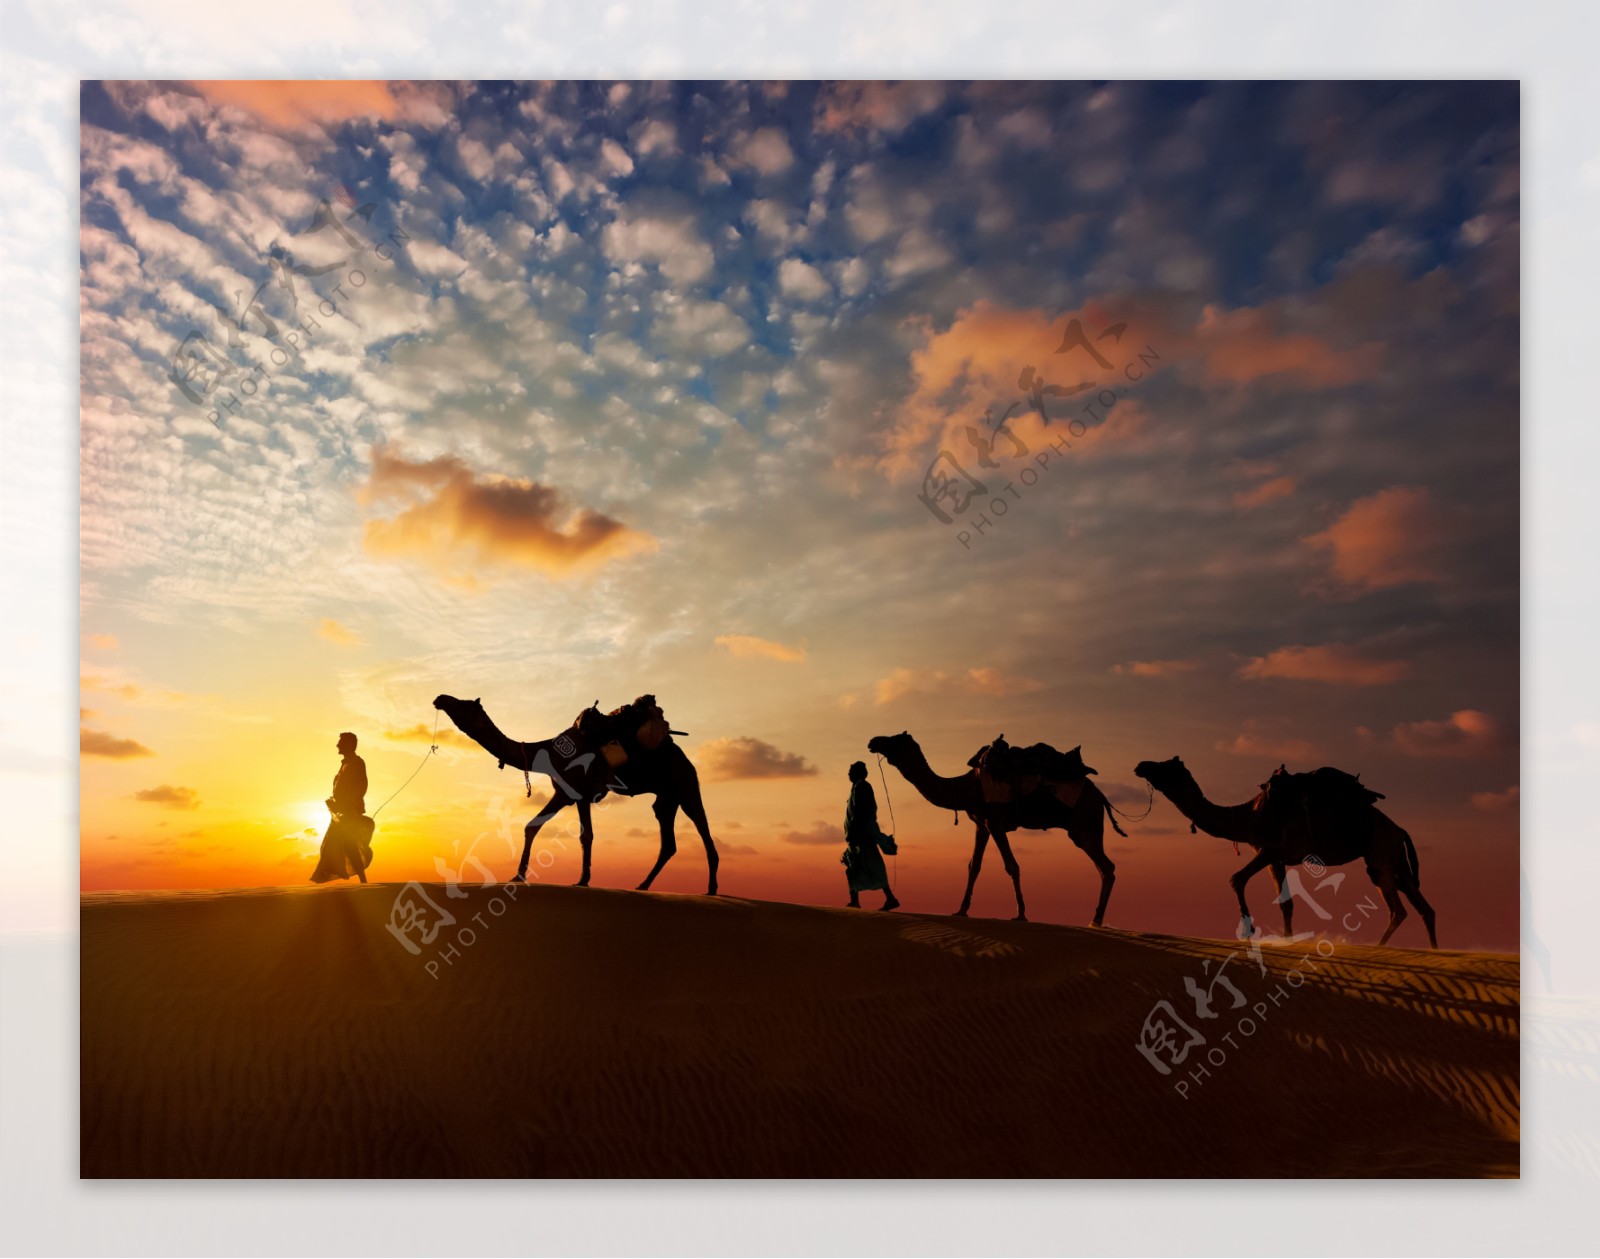 黄昏沙漠骆驼图片